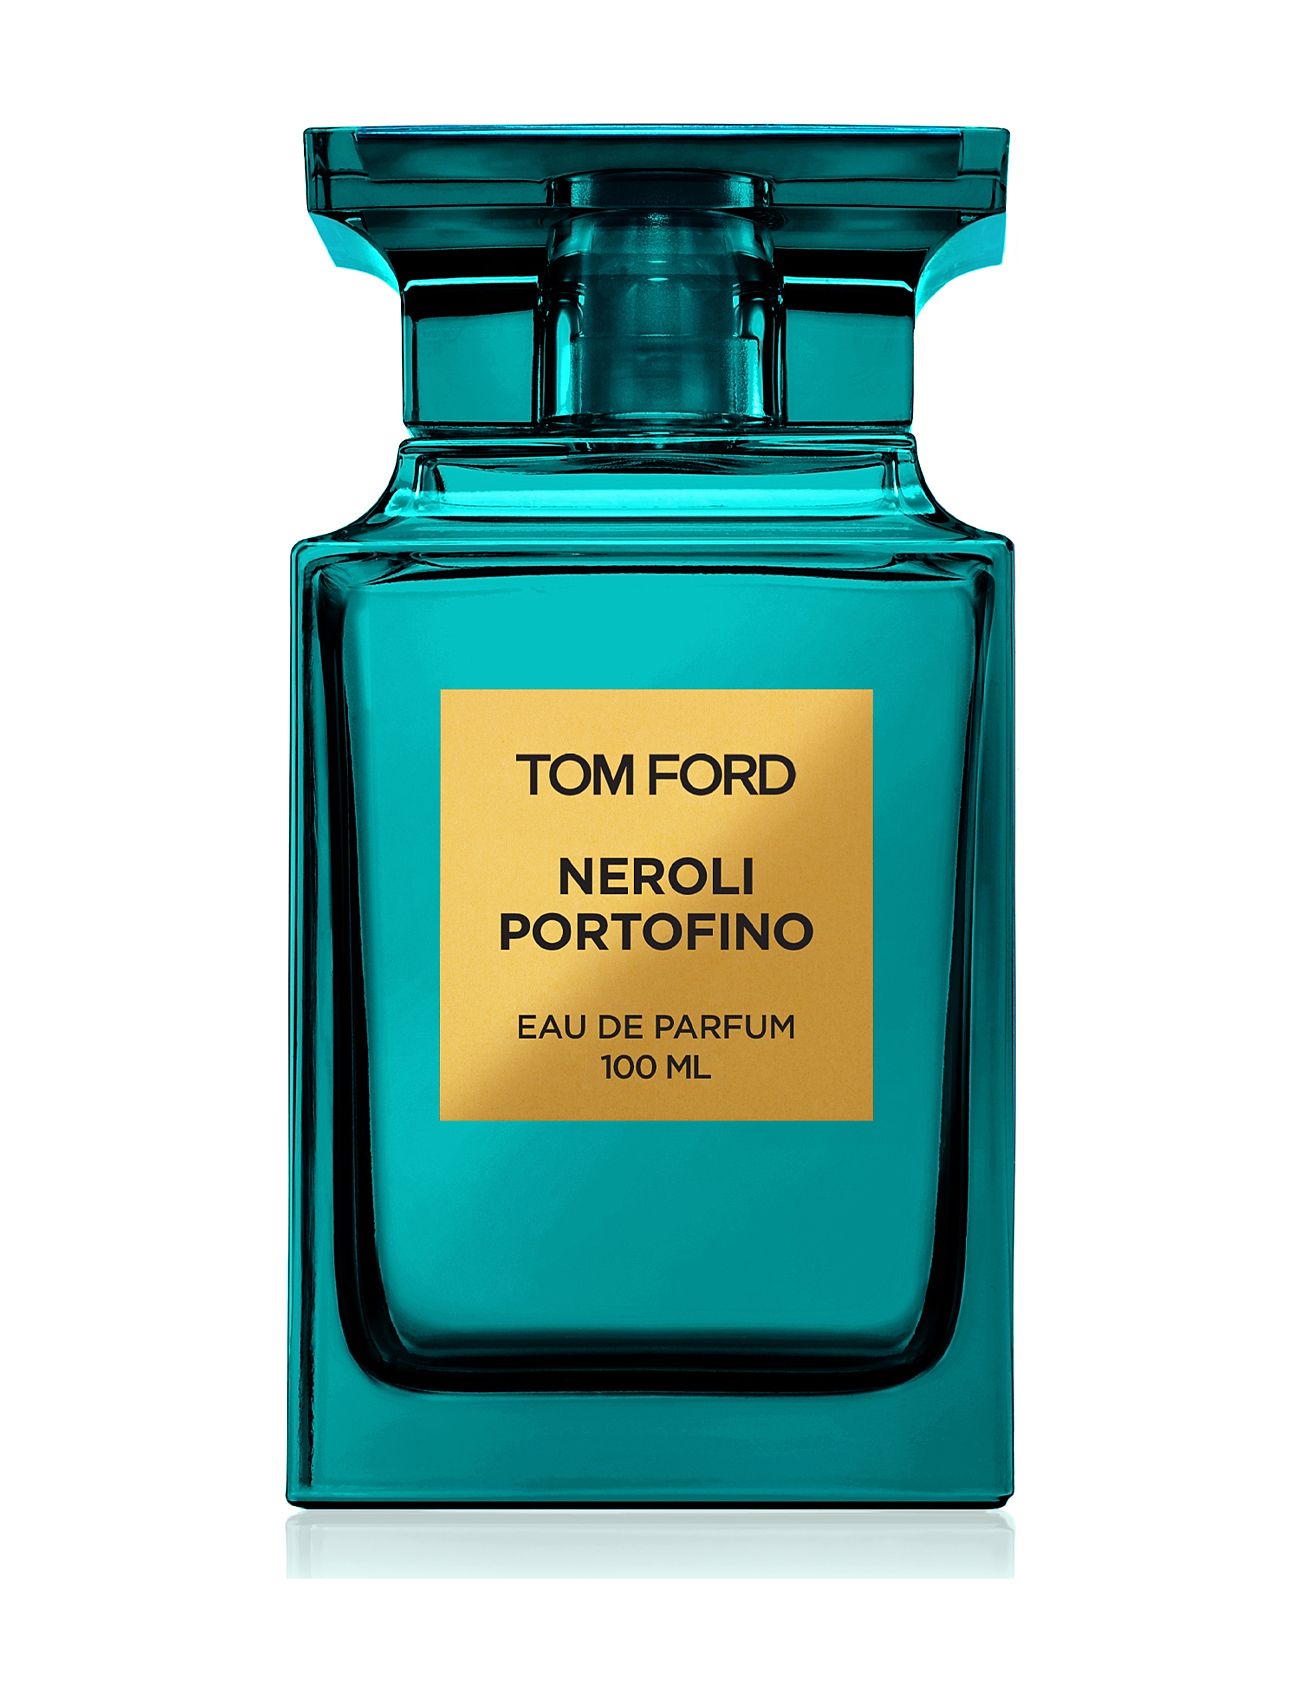 Tom Ford Neroli Portofino Eau De Parfum Parfume Eau De Parfum Nude TOM FORD